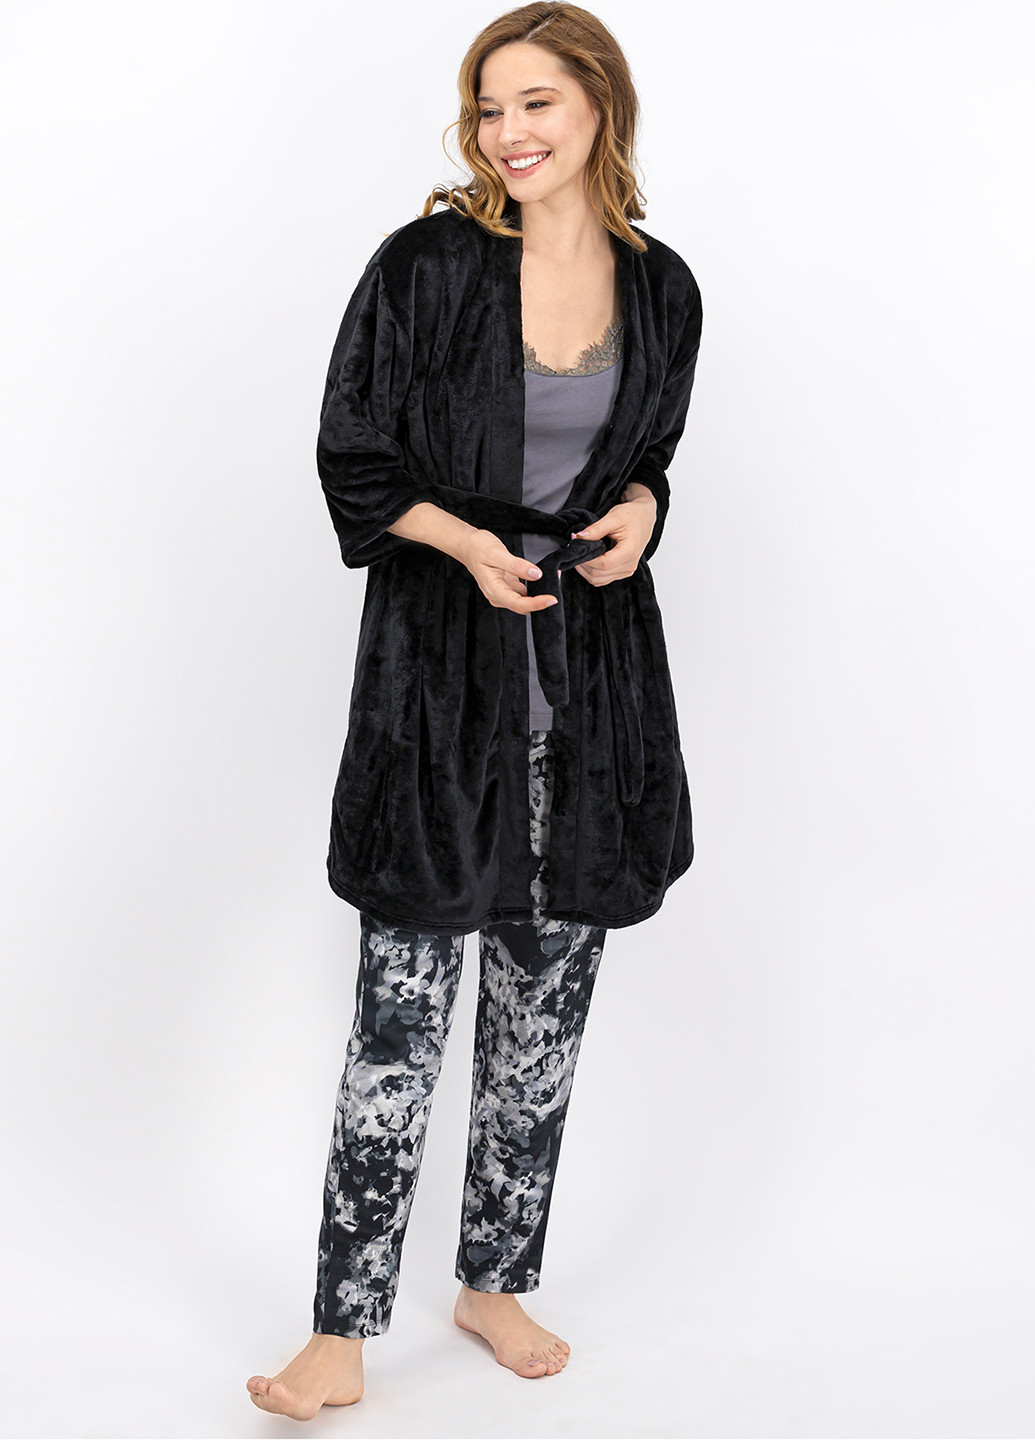 Черная всесезон пижама (халат, майка, брюки) майка + брюки ECROU